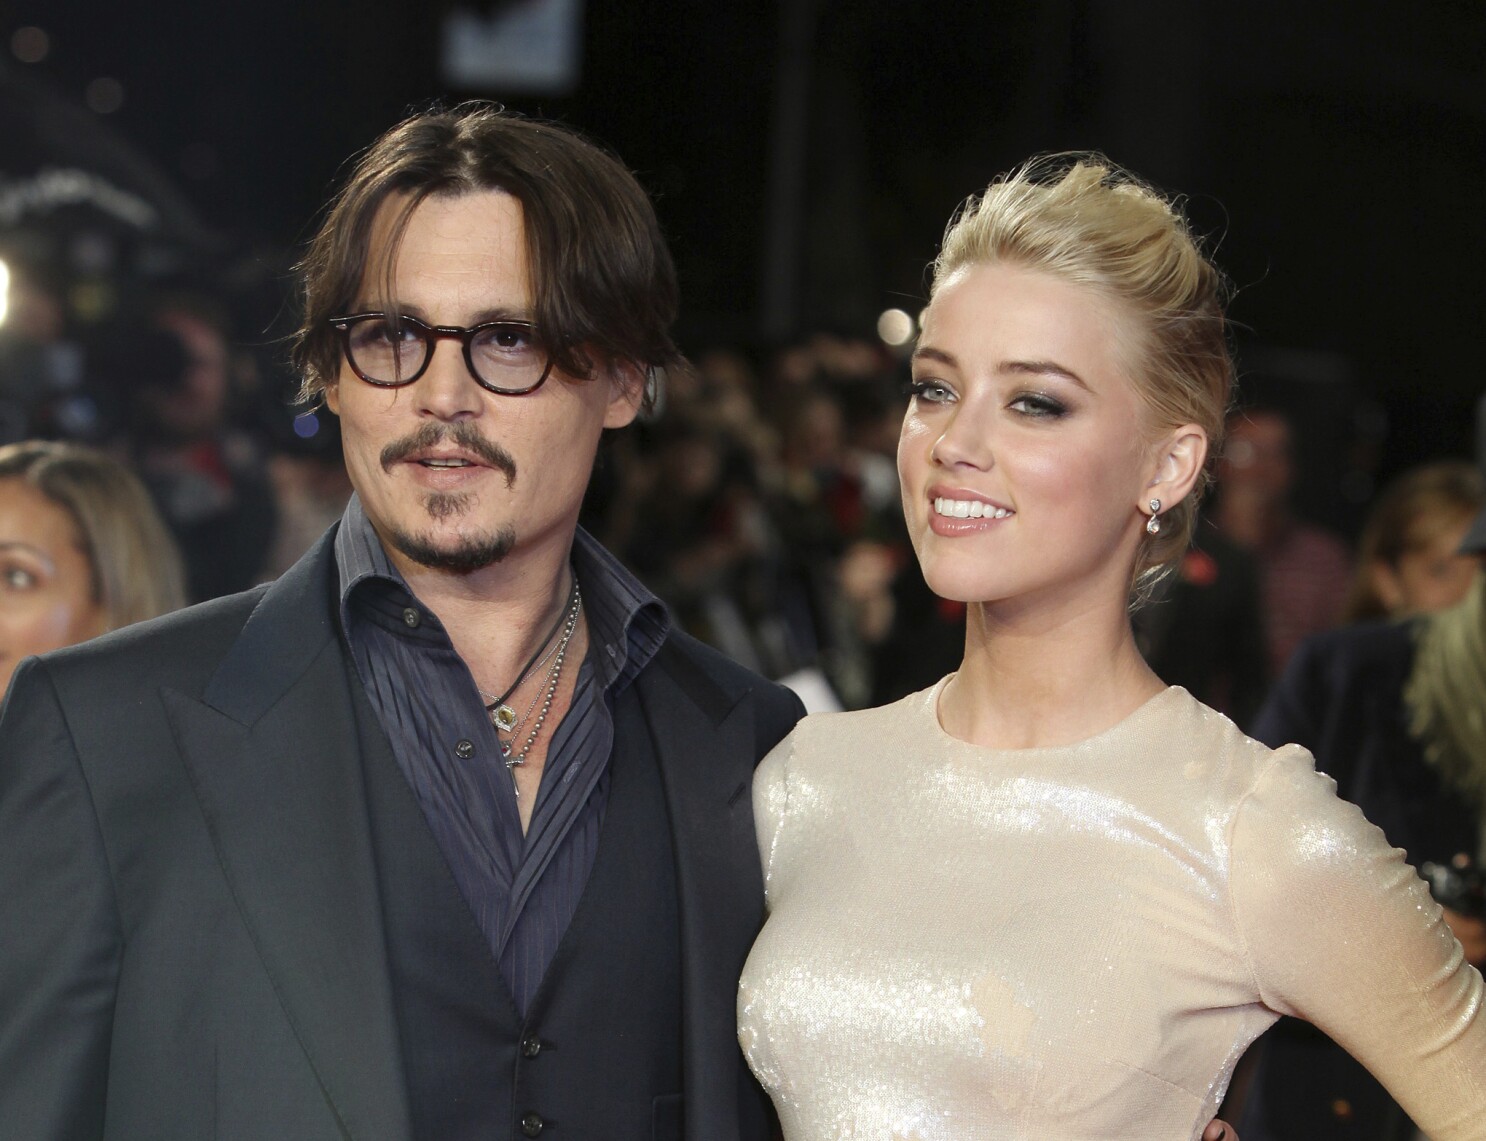 Juicio de Johnny Depp y Amber Heard: ¿Por qué están en la corte? - Los Angeles Times